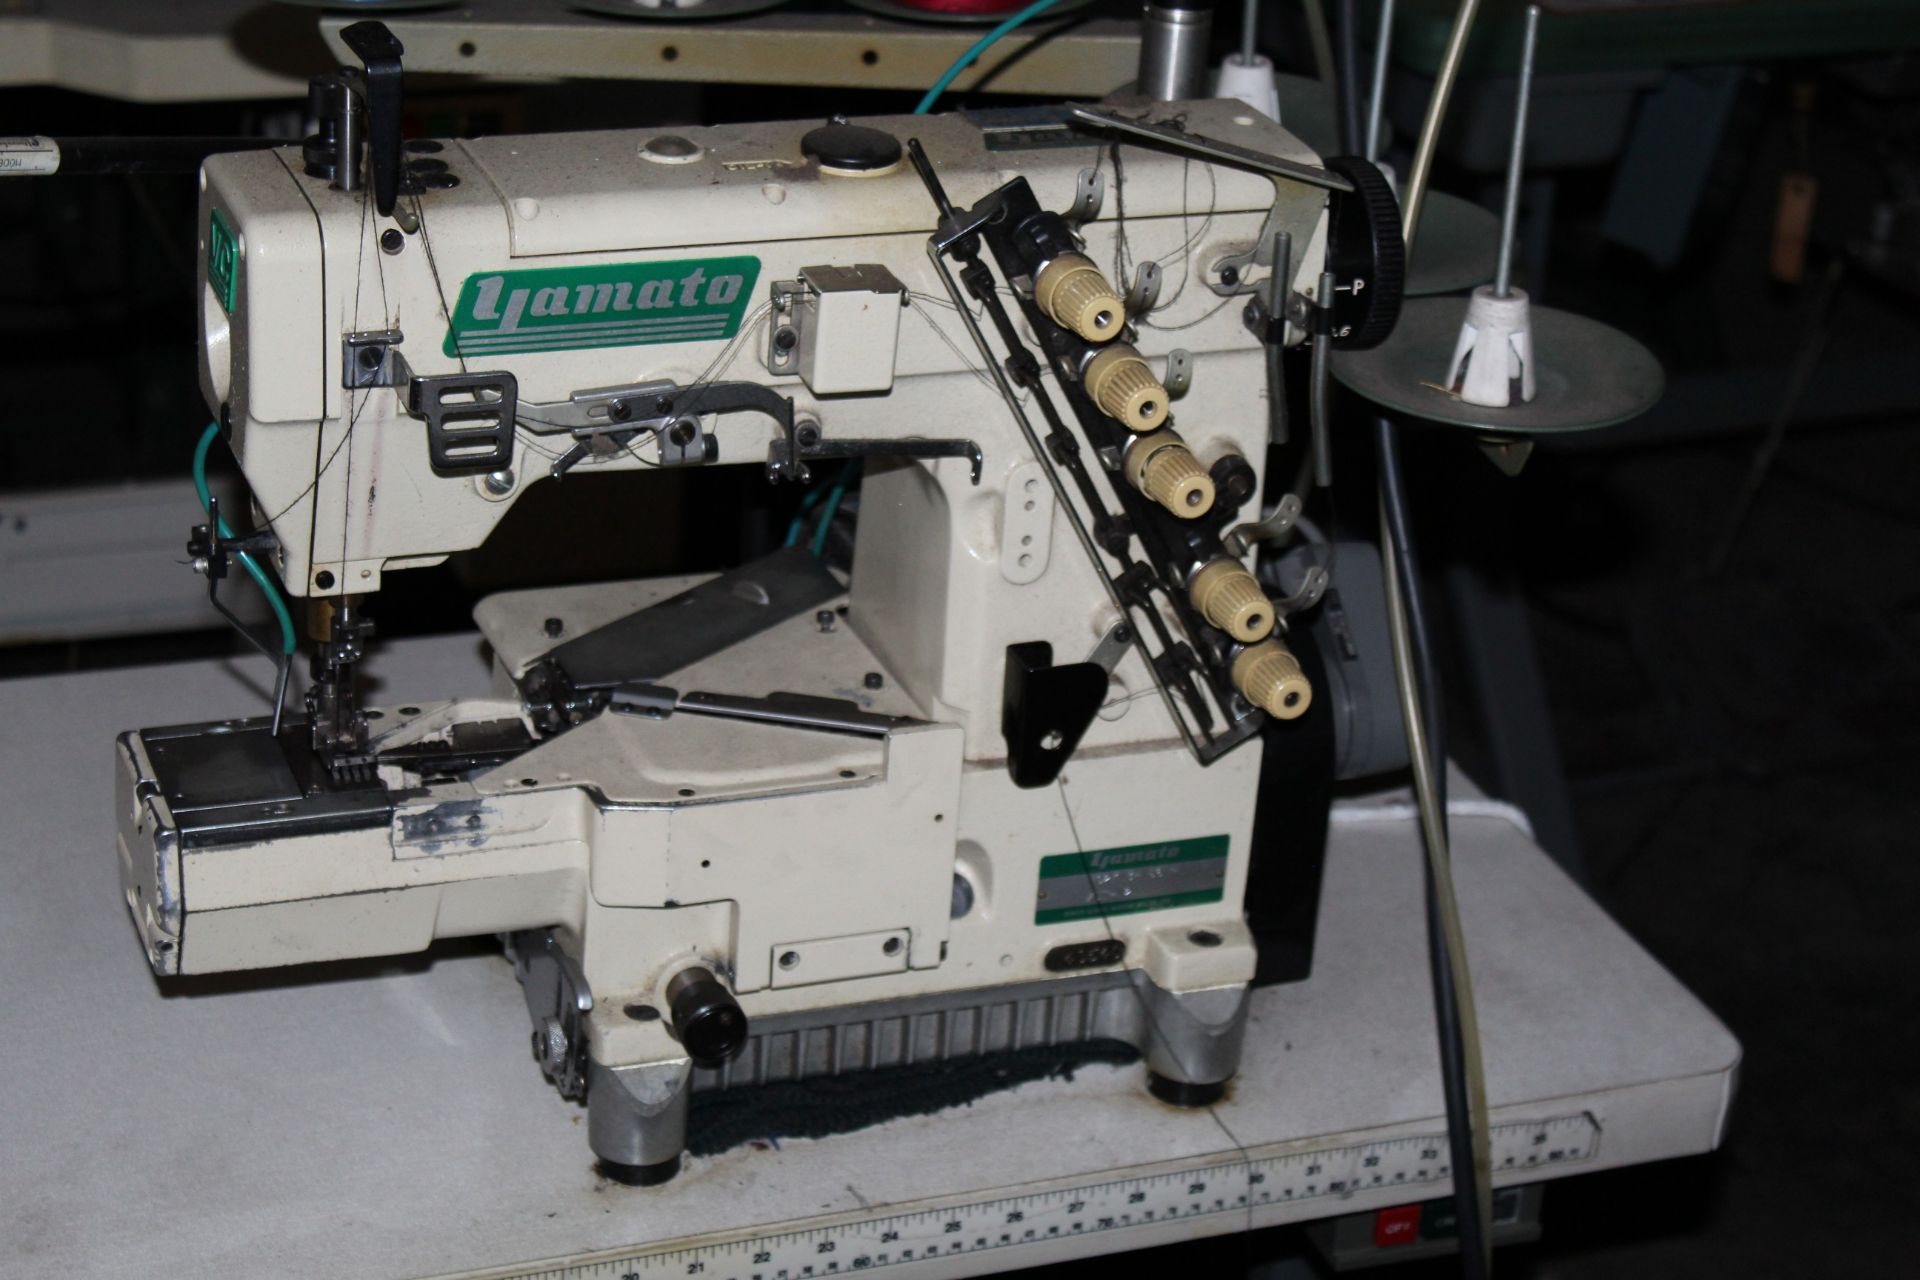 (2) Yomato Model VC2713-1561-1 2 Needle Sewing Machines - Image 3 of 3